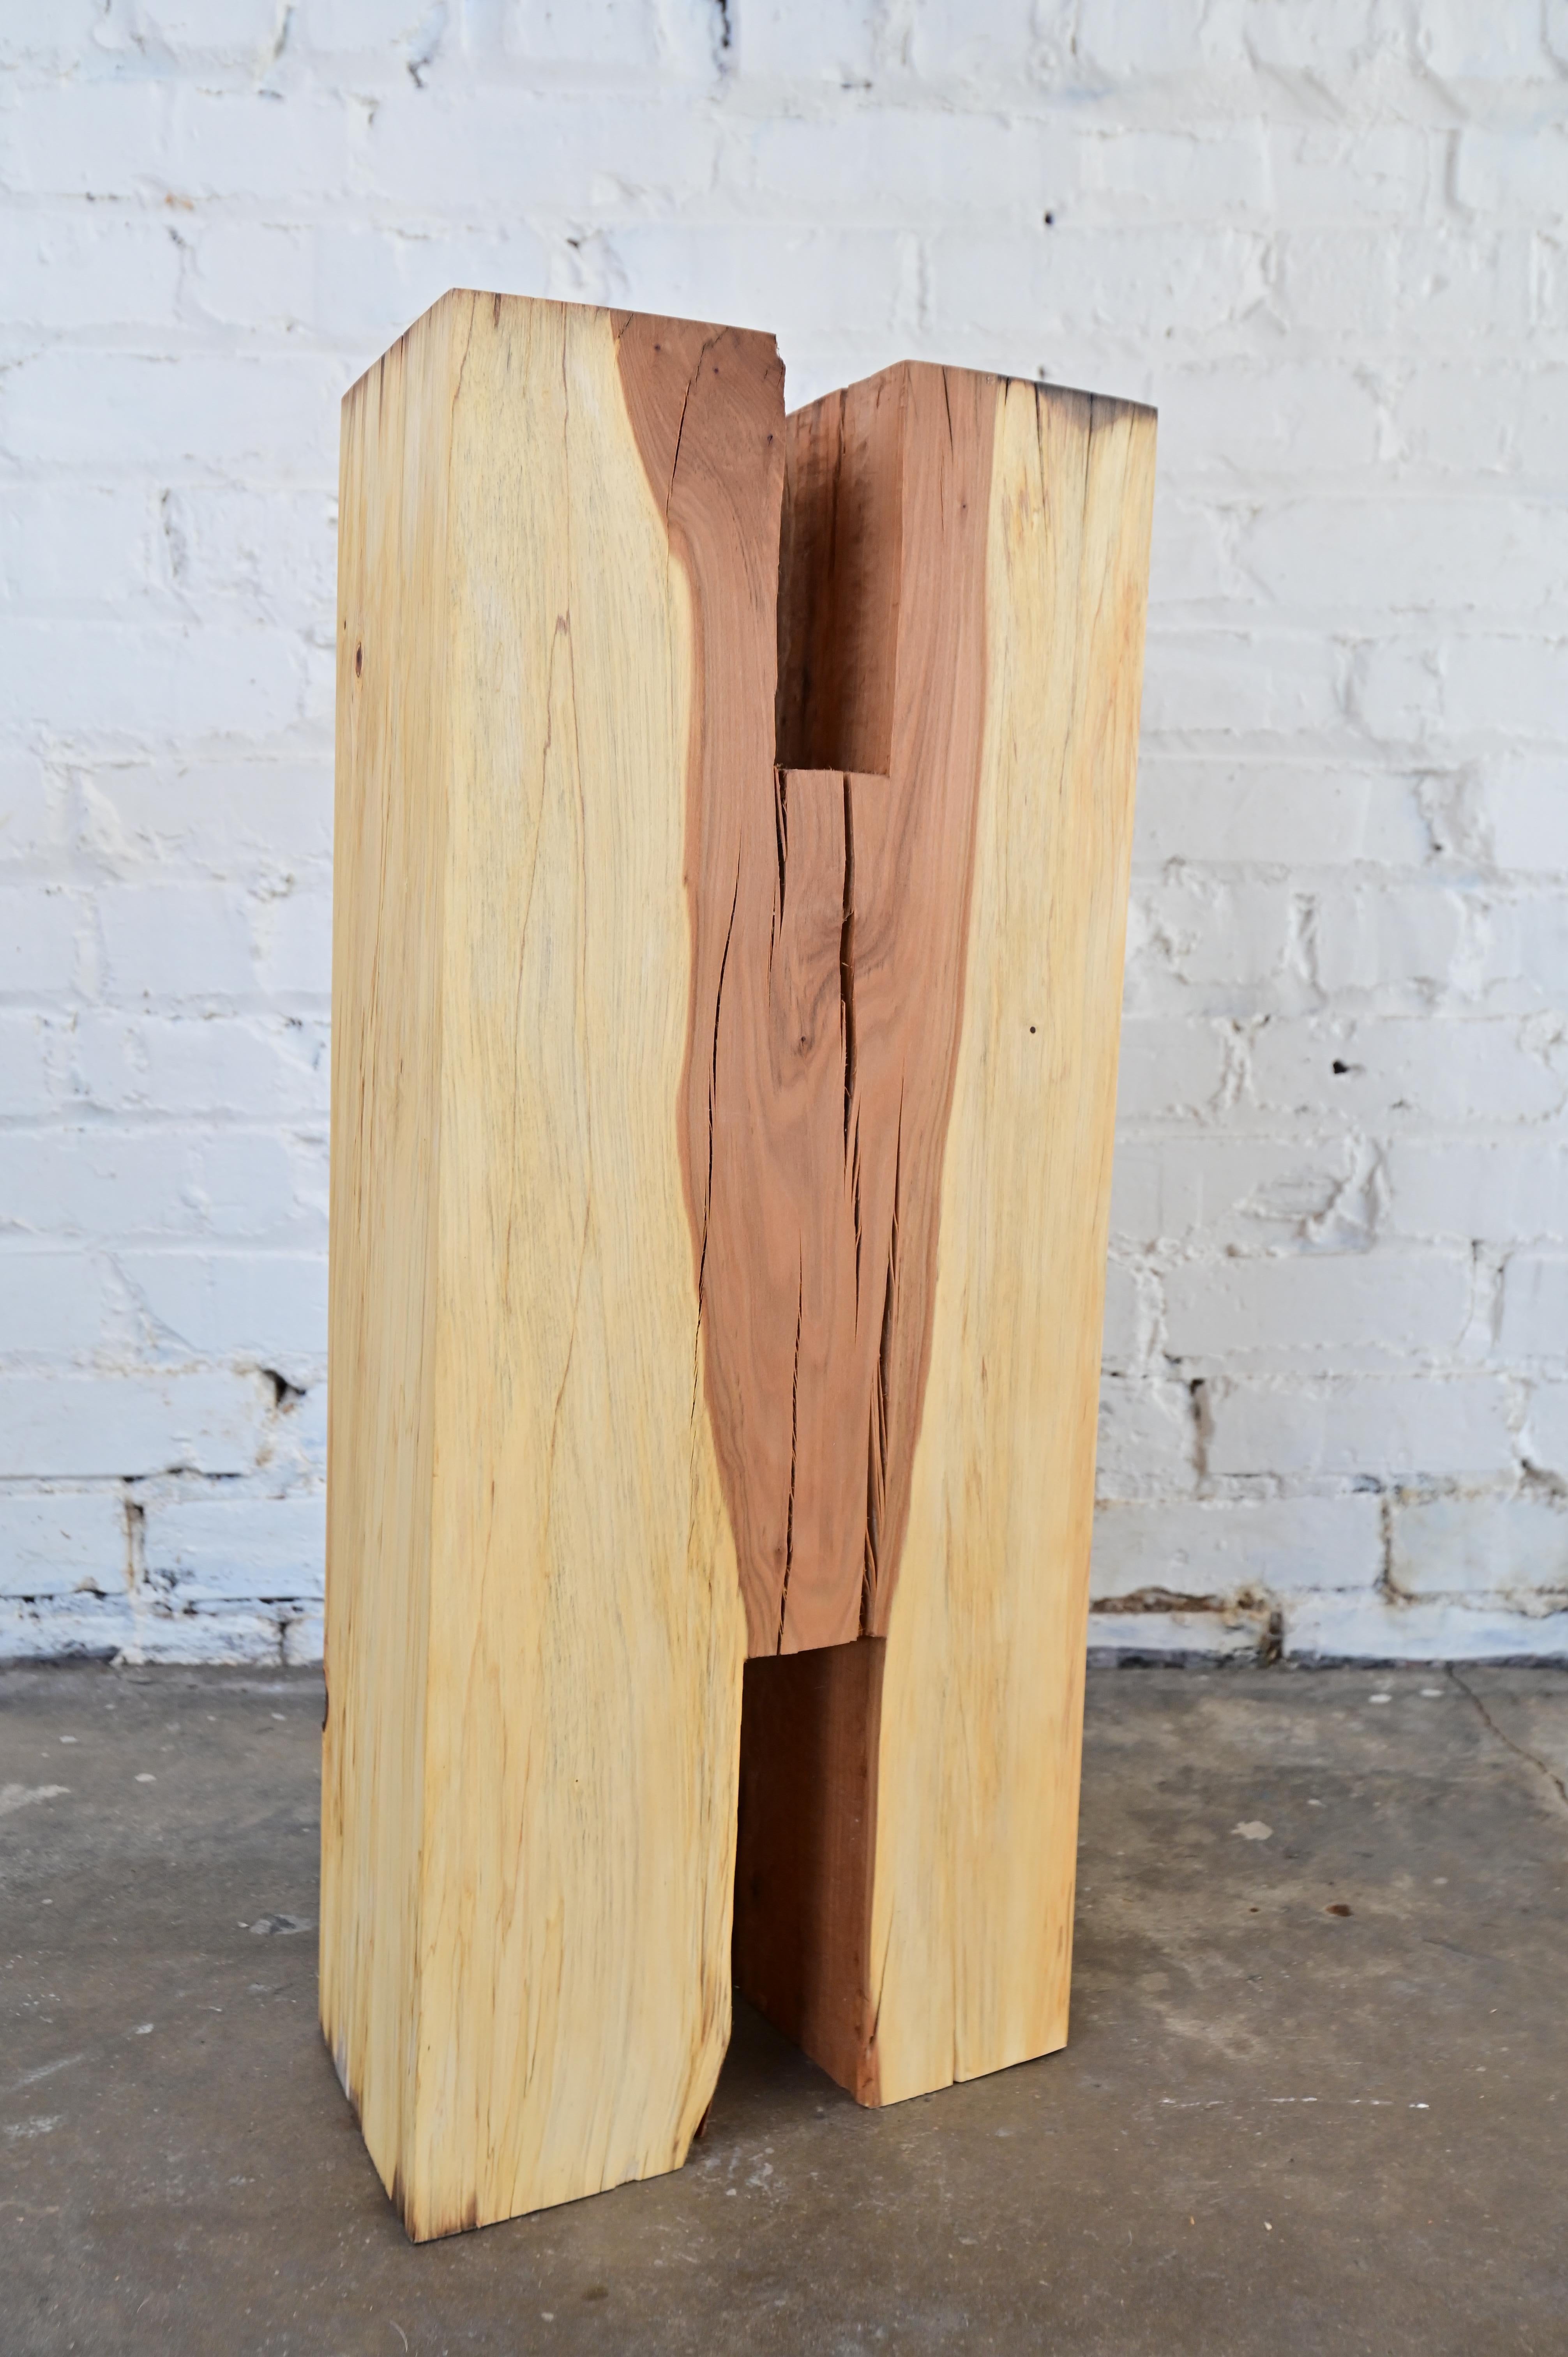 Objet d'art/pédestal unique en bois. Sculptée dans du bois massif, avec des marques d'outils à la main et des variations naturelles du grain. 27,5